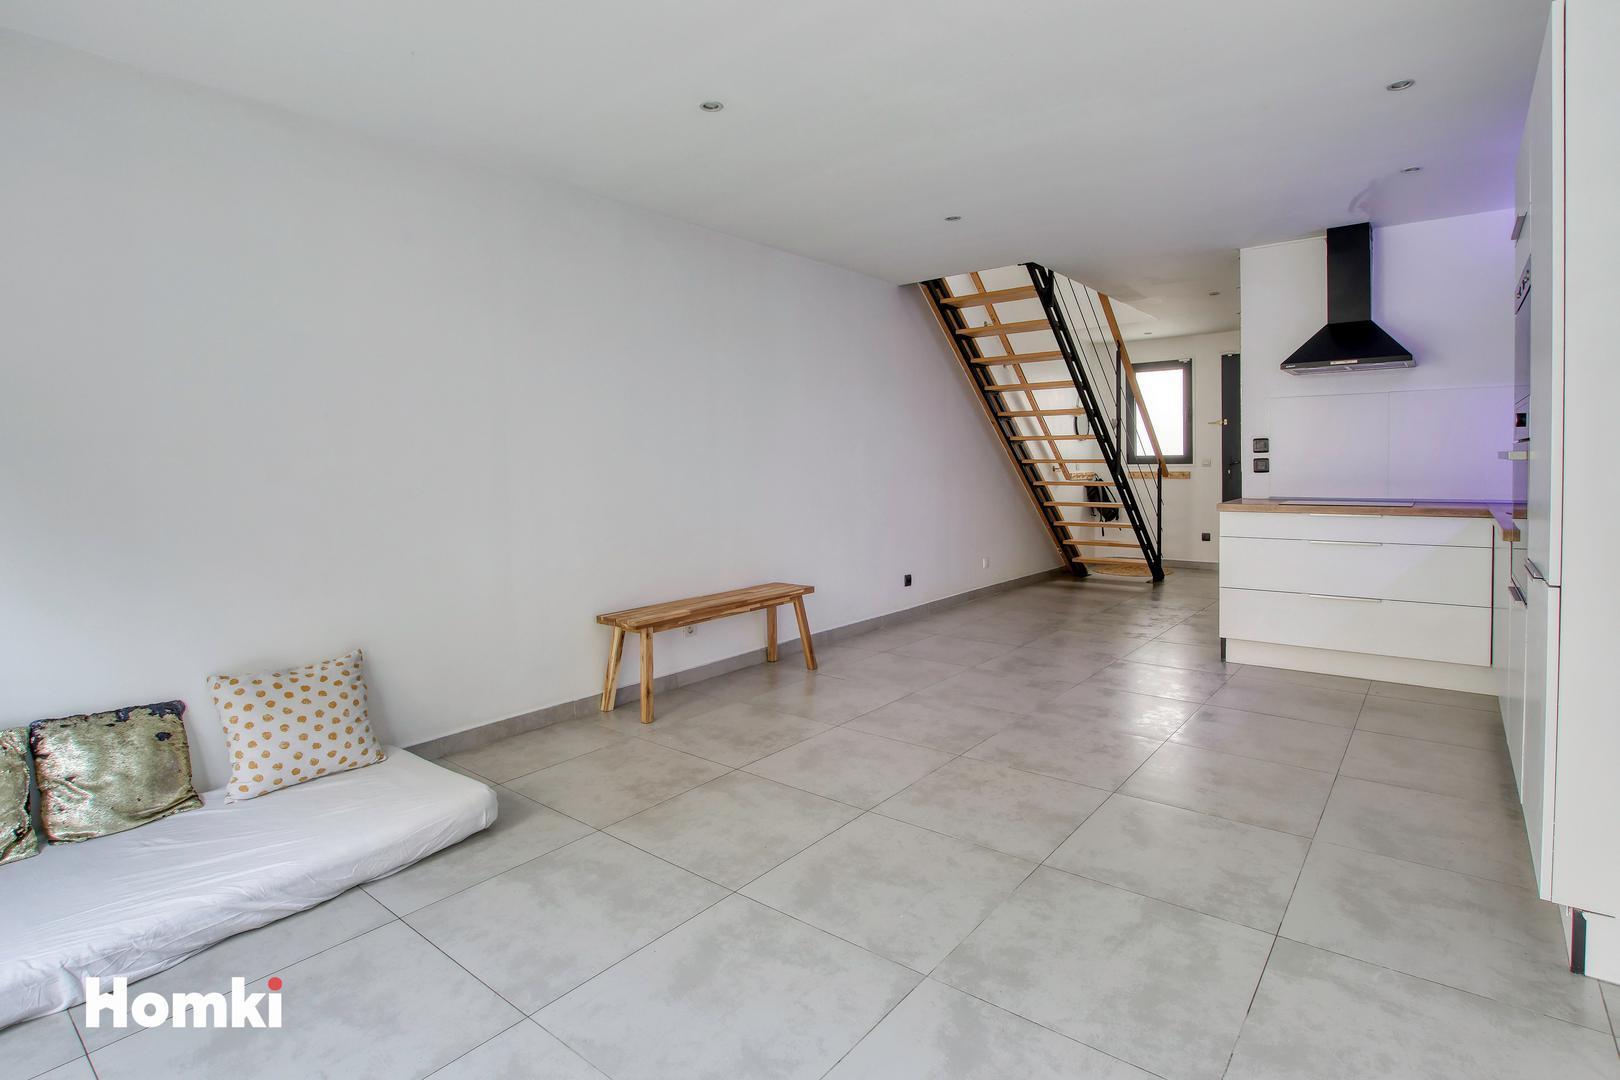 Homki - Vente Maison/villa  de 57.0 m² à Toulon 83200